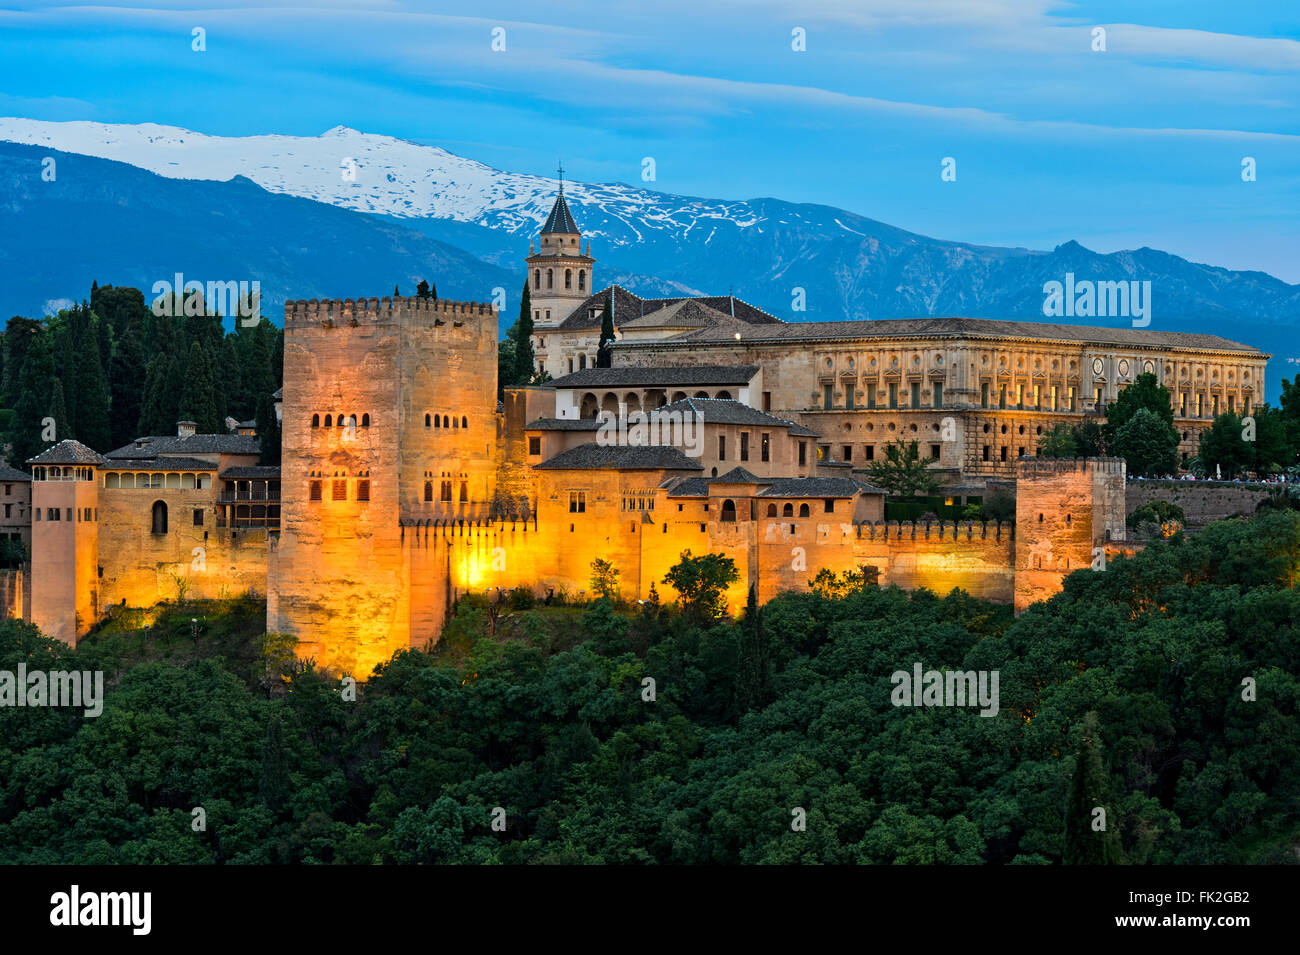 Lumière du soir à l'Alhambra, Site du patrimoine mondial de l'UNESCO, à l'encontre de la Sierra Nevada, Grenade, Andalousie, Espagne Banque D'Images